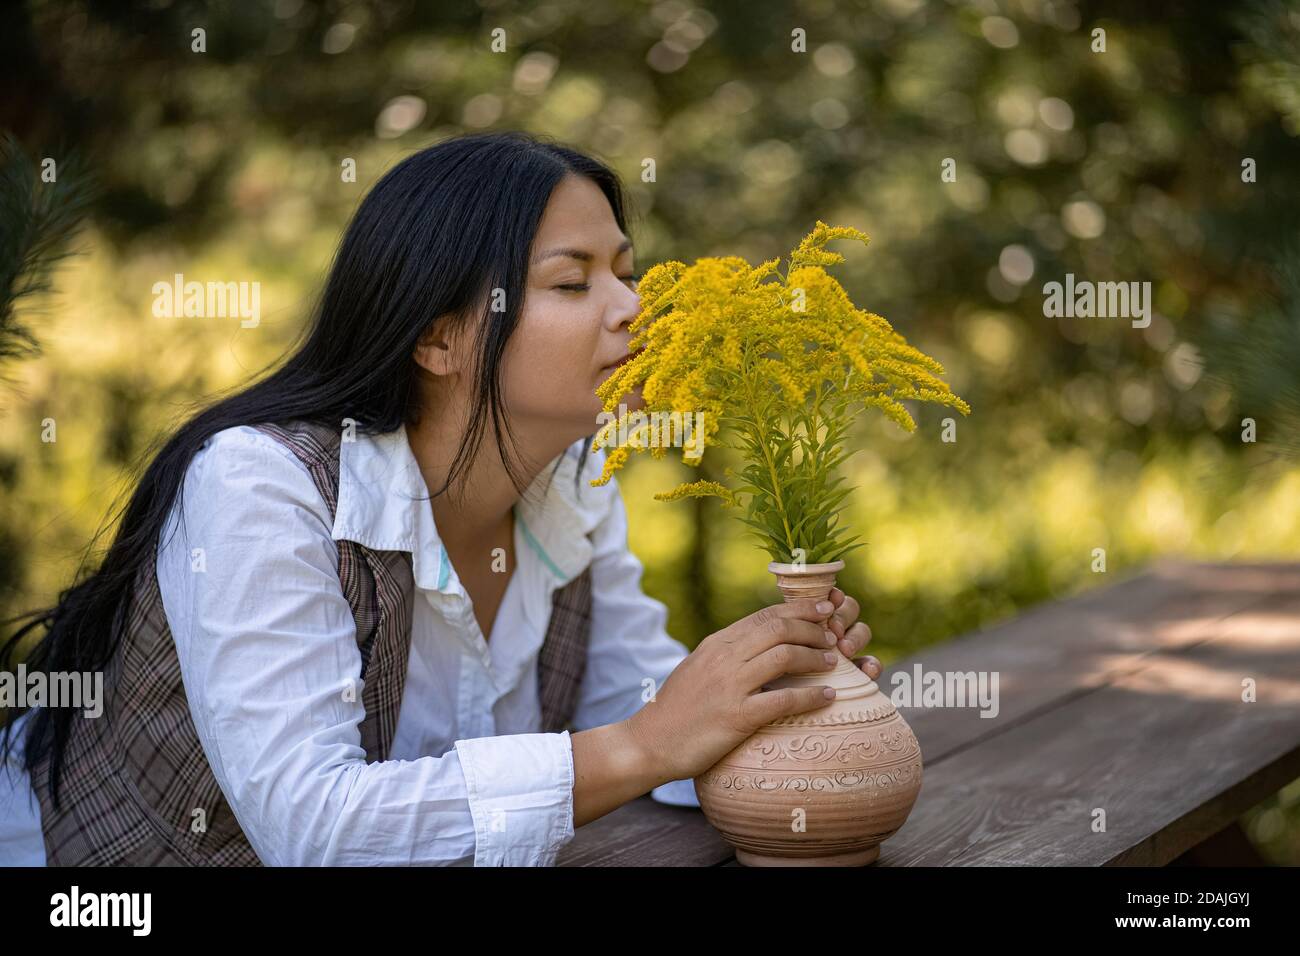 Schönheit Frau schnüffelt Duft von gelben Blumen an warmen Tag im Garten. Asiatische Brünette ruht am Holztisch mit Strauß von Solidago auf ihm. Weiblich Stockfoto